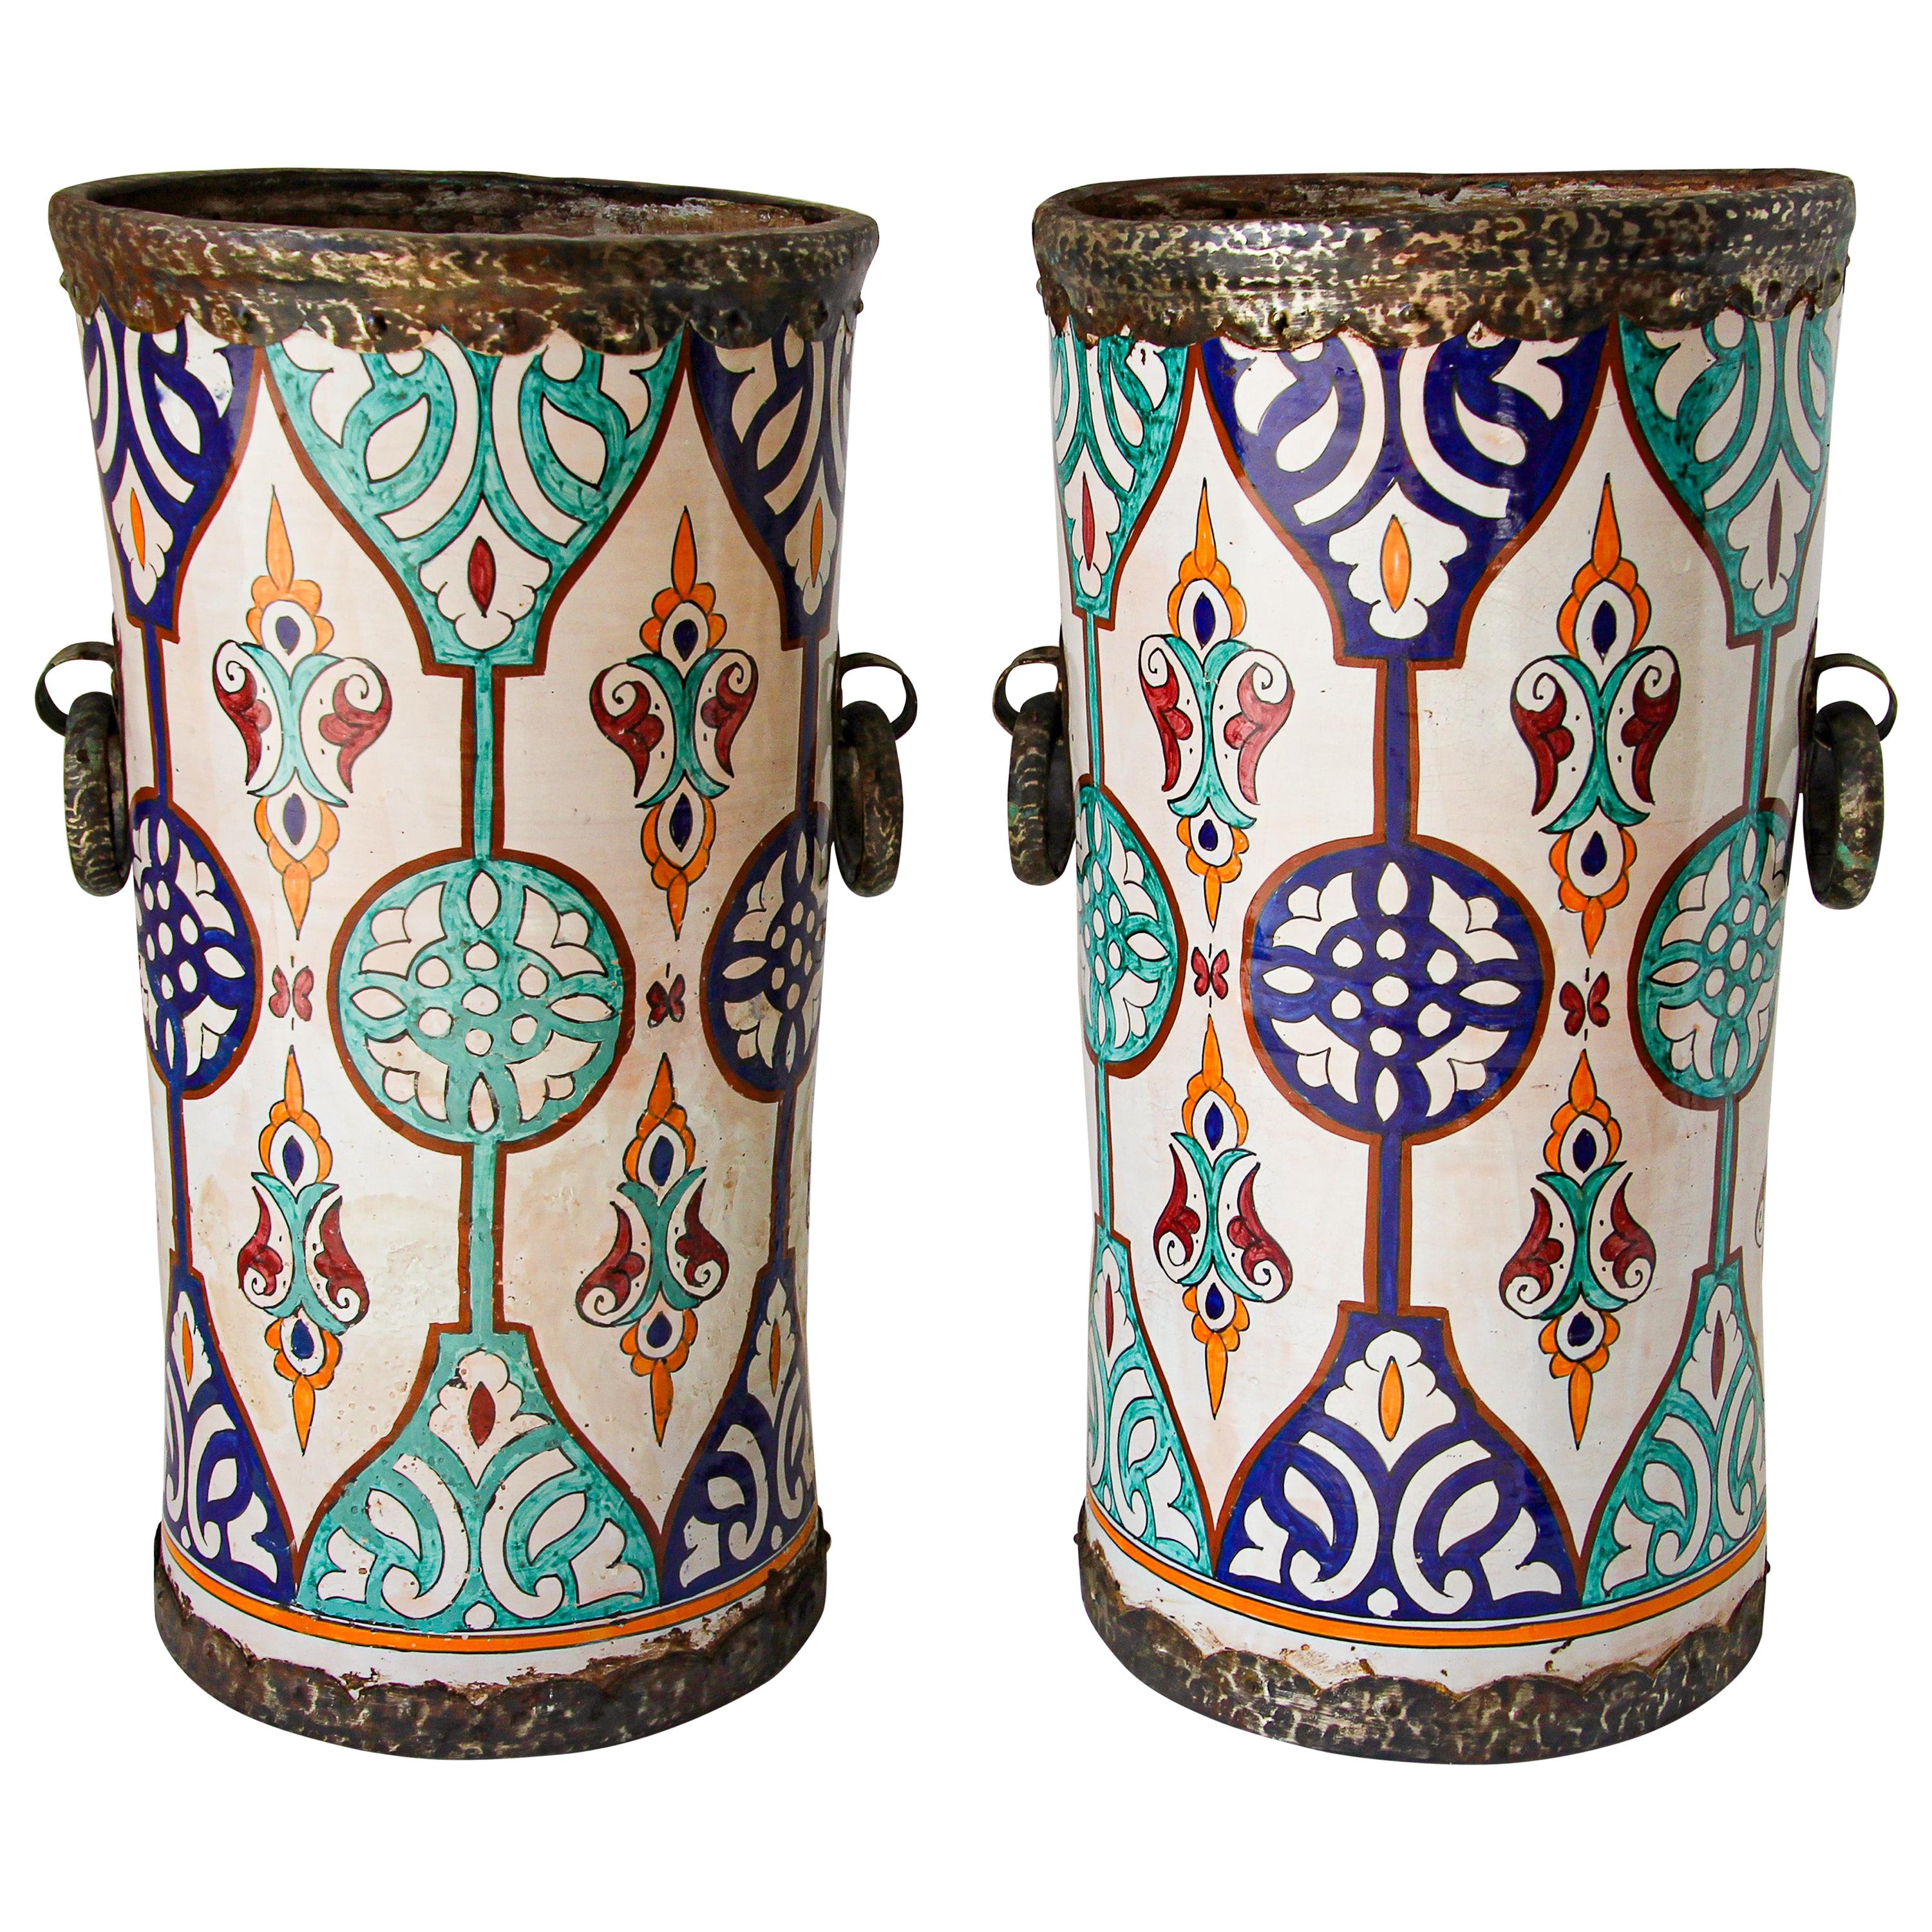 Handgefertigte maurische Keramik-Pflanzgefäße mit Griffen